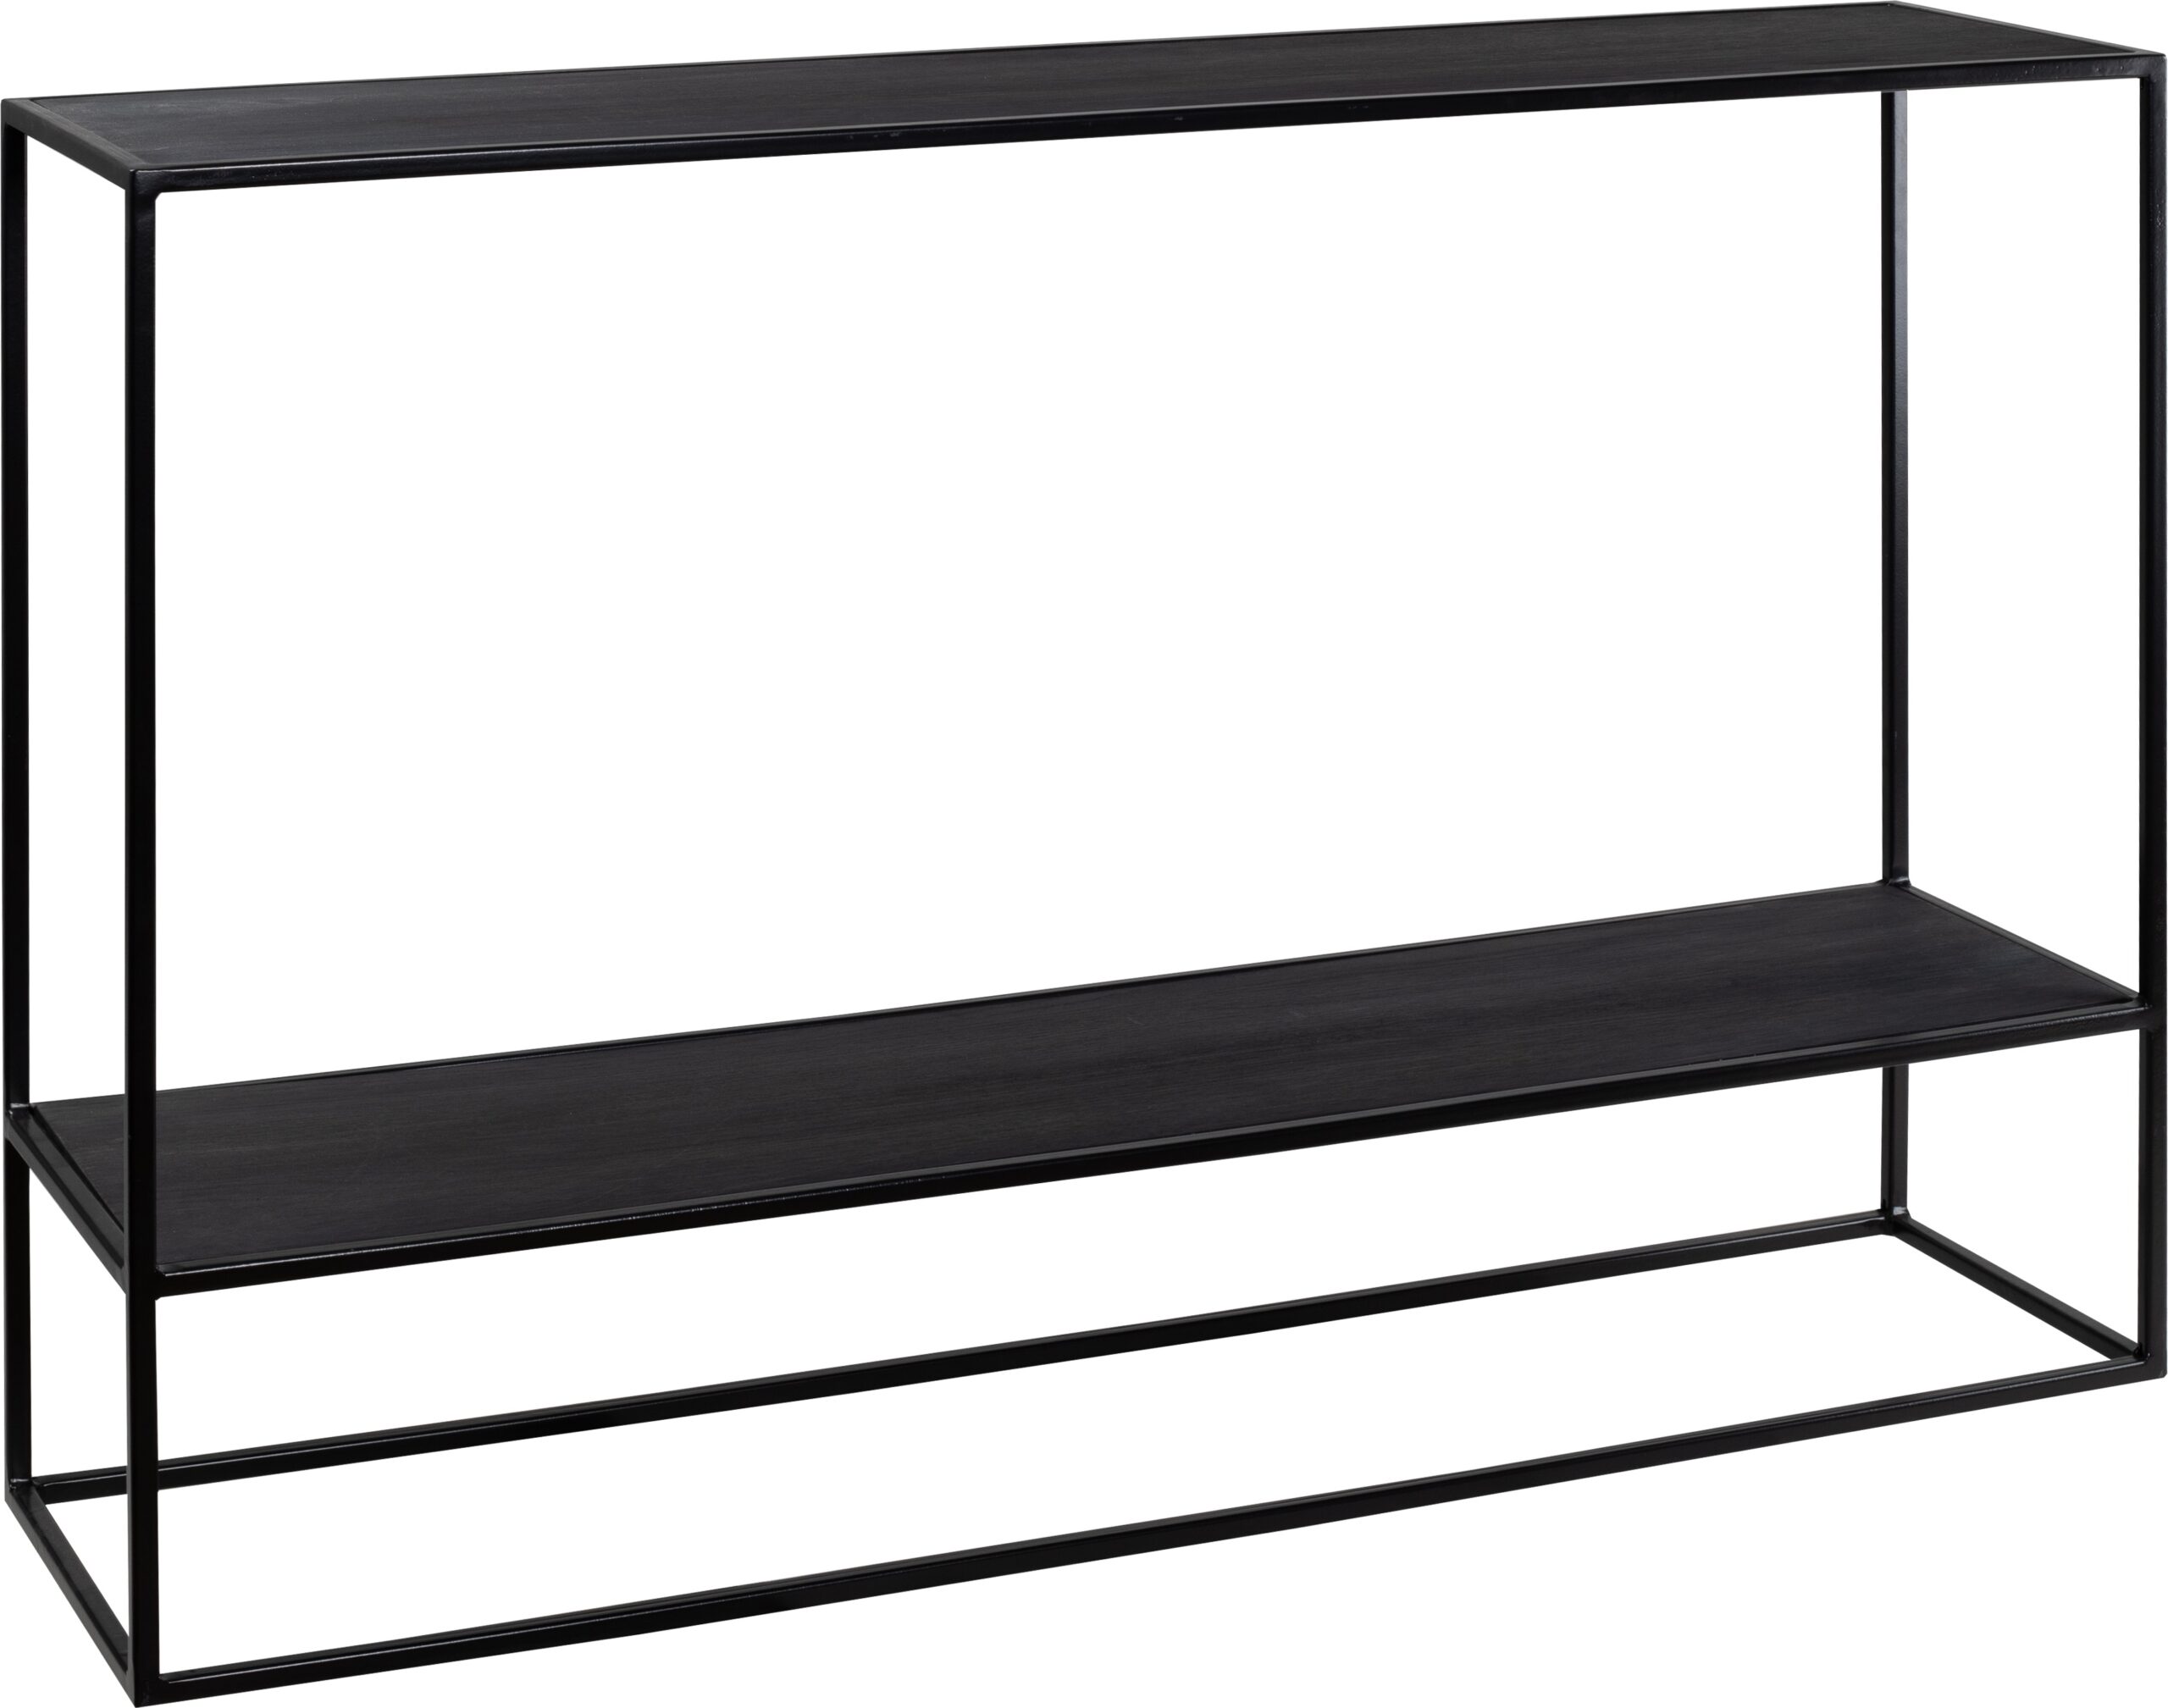 Side table metal+Oak veneer 120 – black